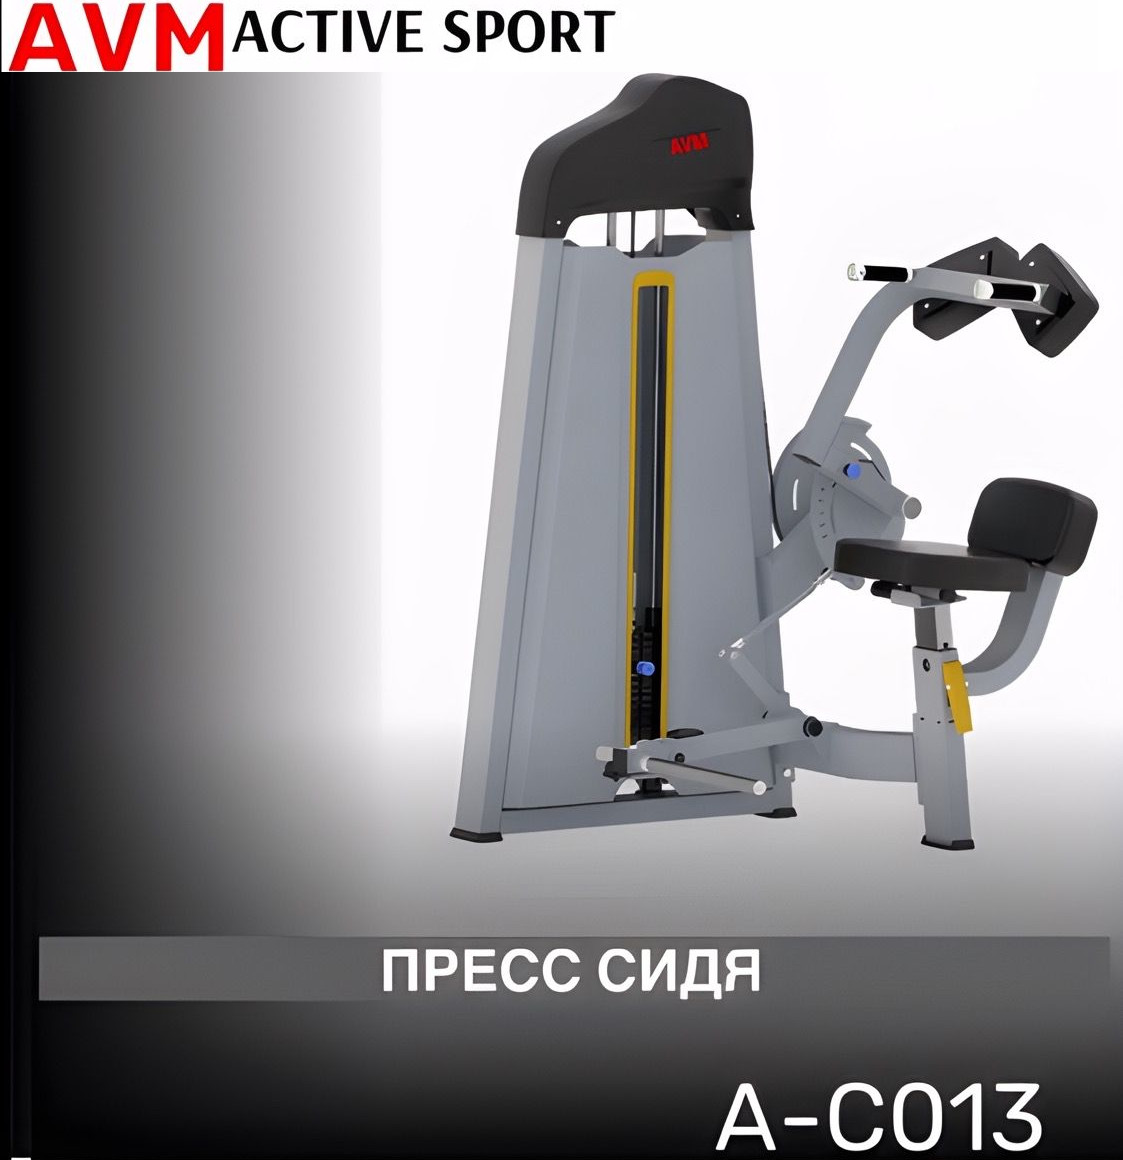 Тренажер для зала AVM A-C013 пресс сидя профессиональный силовой